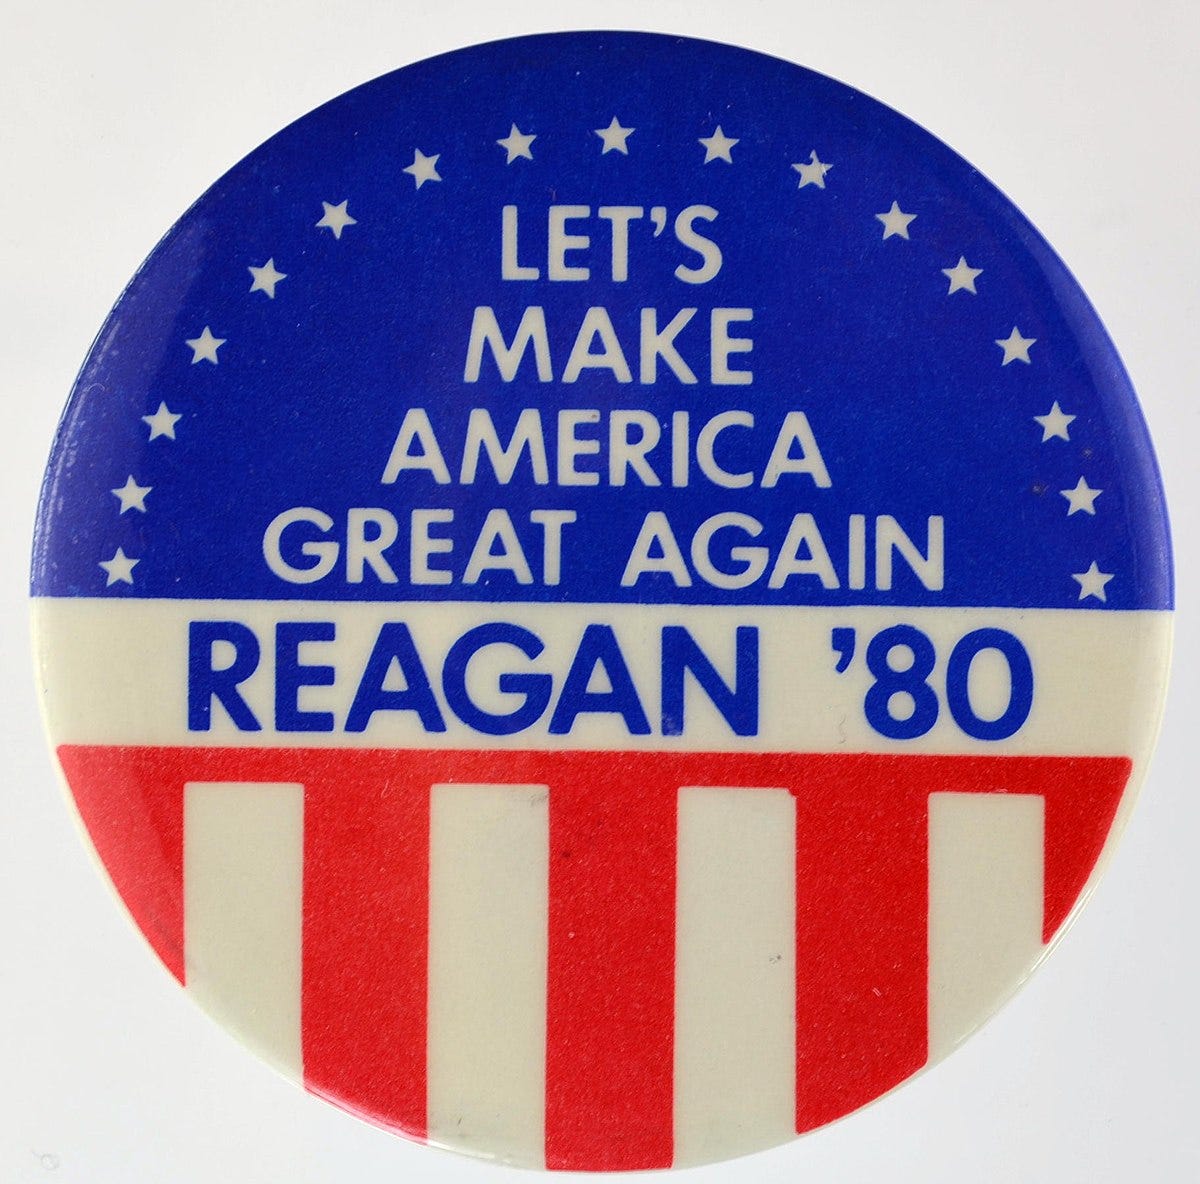 Make America Great Again - Wikipedia